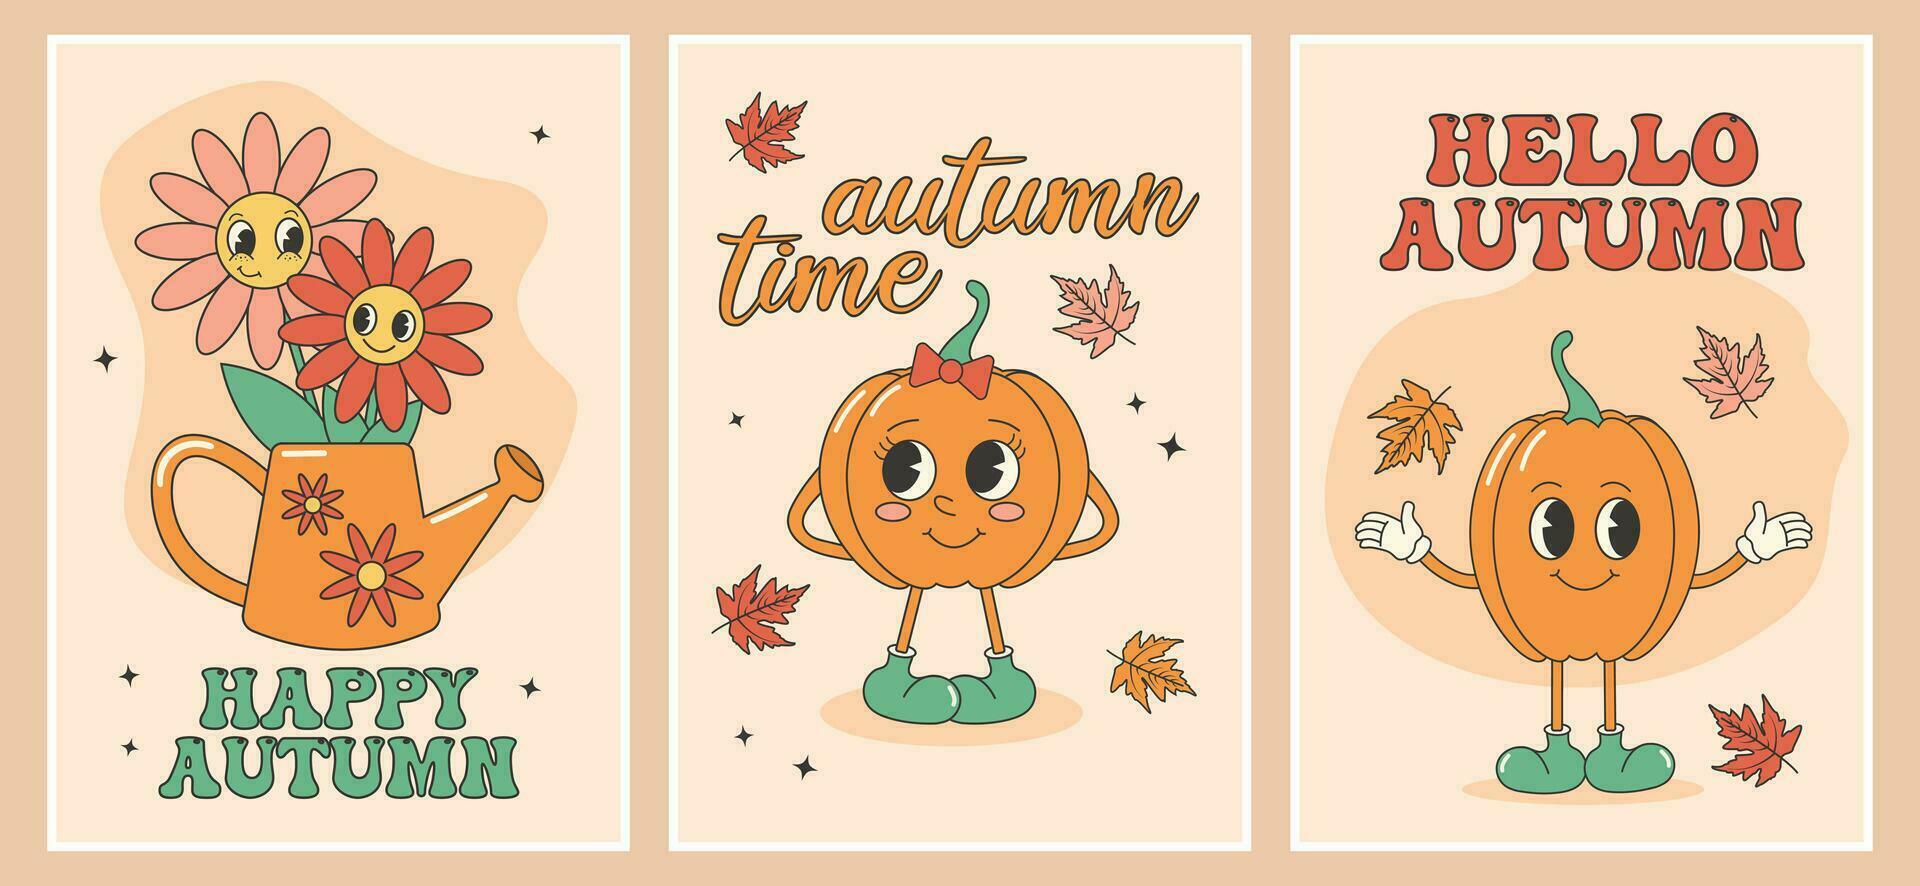 maravilloso otoño otoño tarjeta, póster conjunto con linda otoño calabazas y refranes dibujos animados caracteres en de moda retro estilo, cómic mascota caracteres. vector